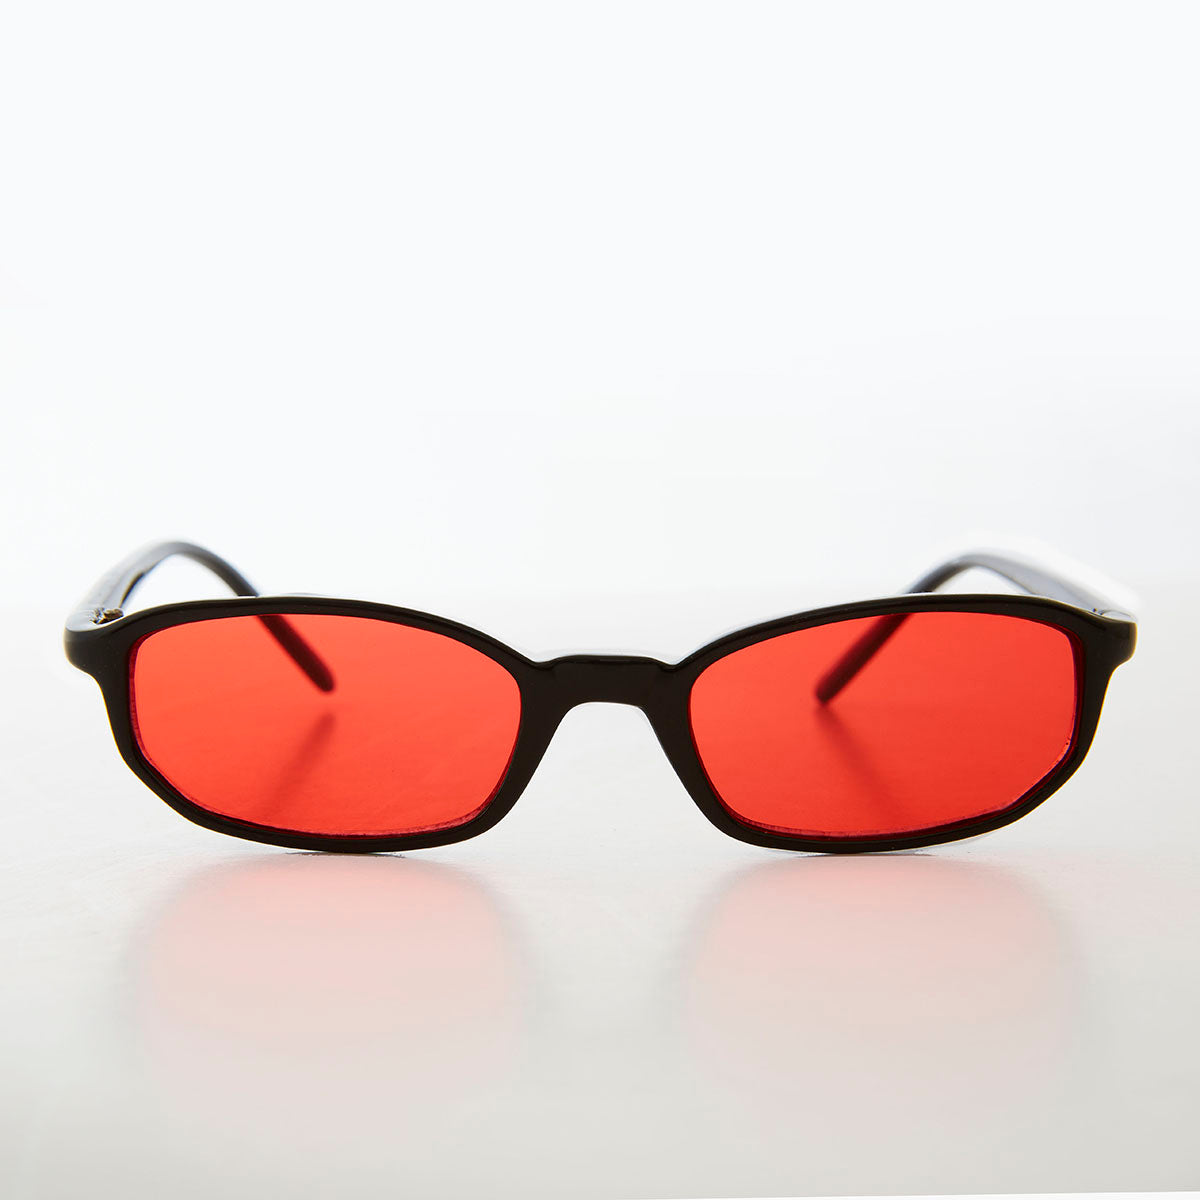 Classic Oval Small Sunglasses For Men And Women-Unique and Classy – UNIQUE  & CLASSY